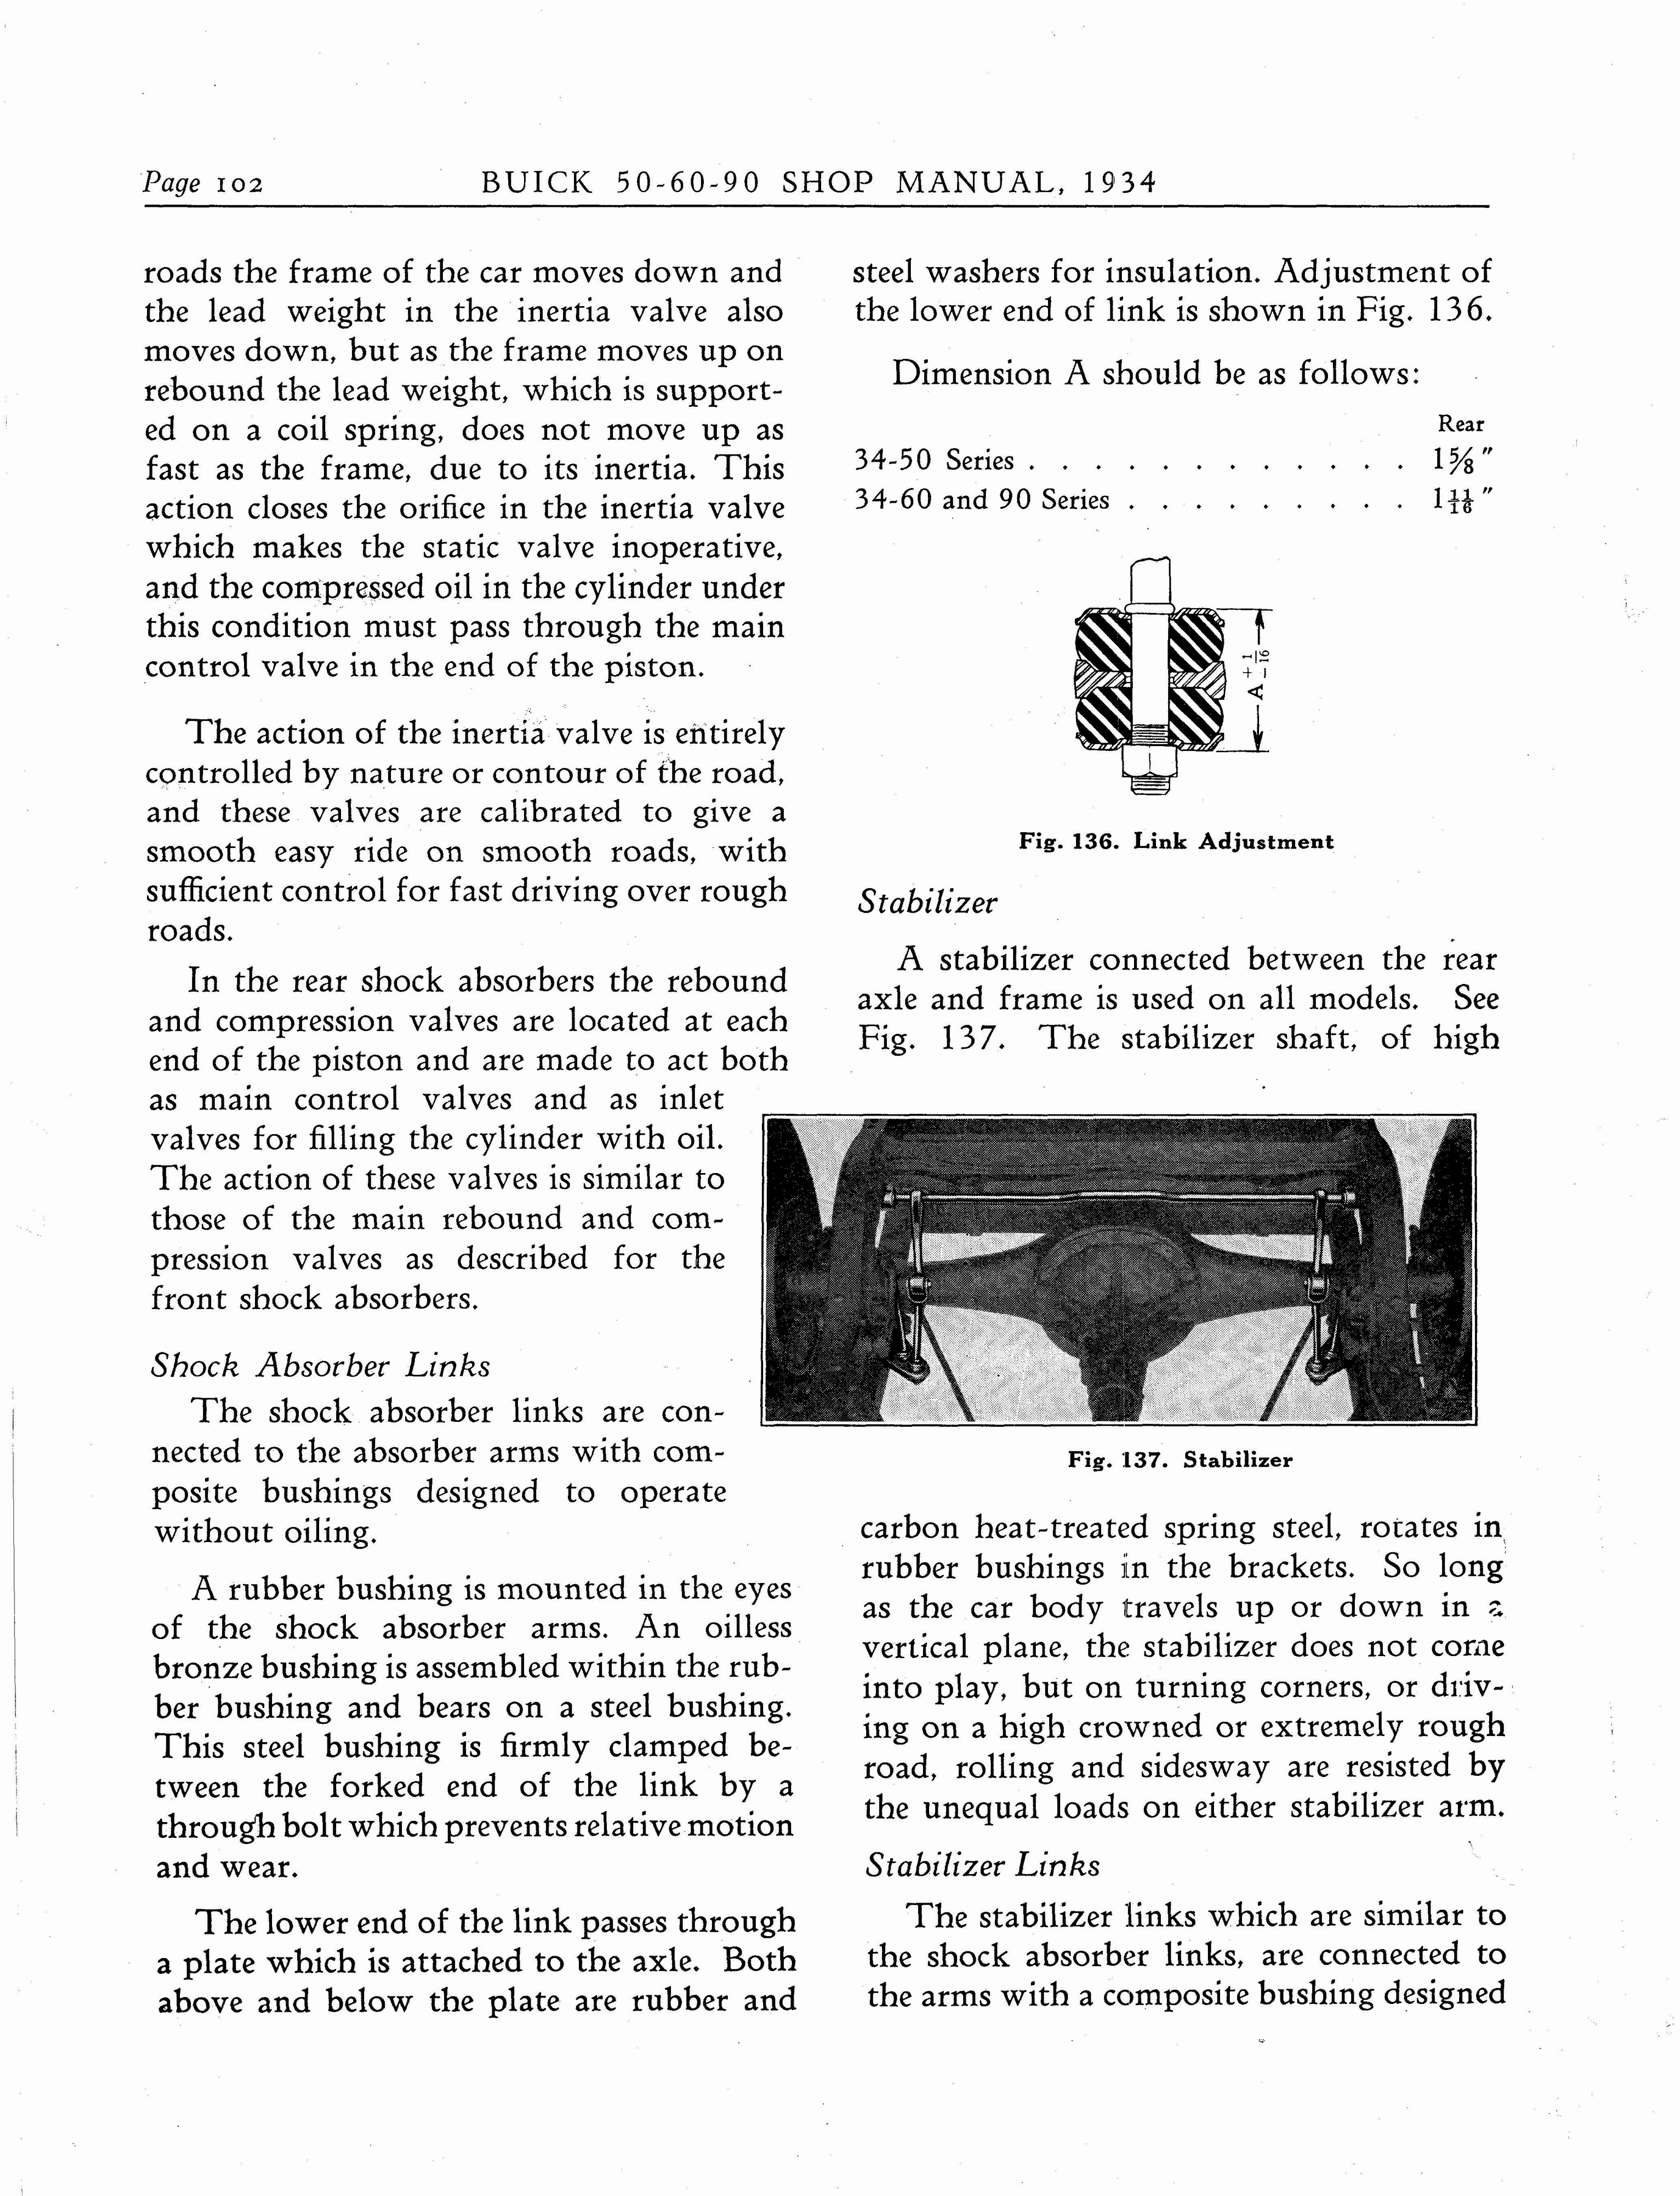 n_1934 Buick Series 50-60-90 Shop Manual_Page_103.jpg